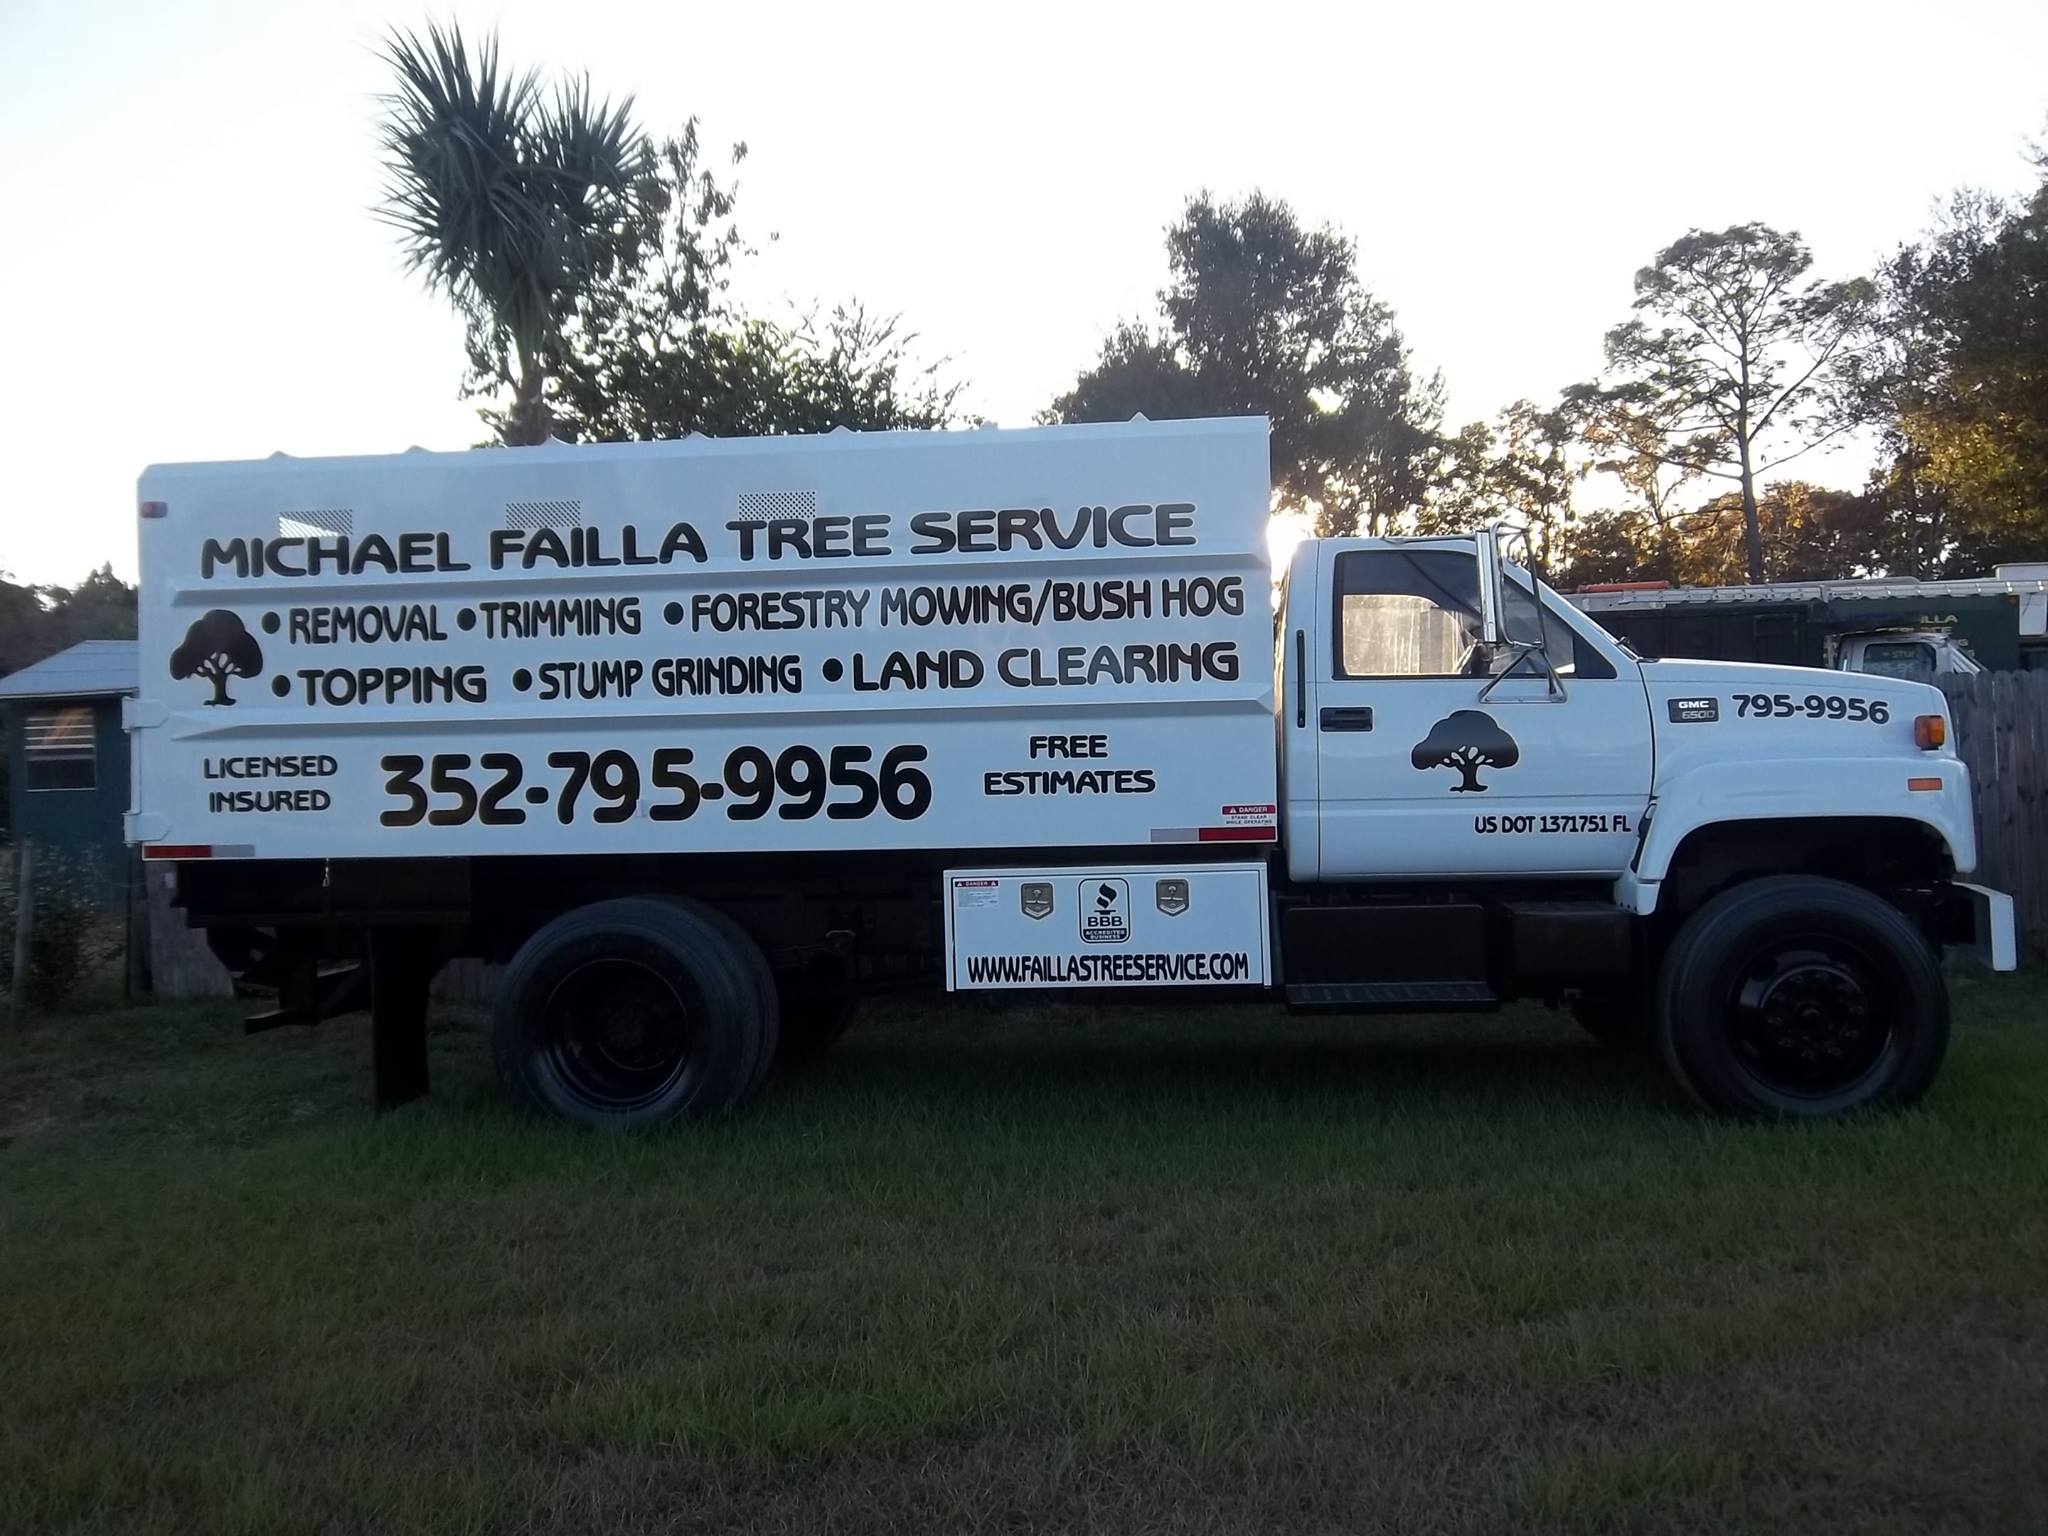 Michael Failla Tree Service